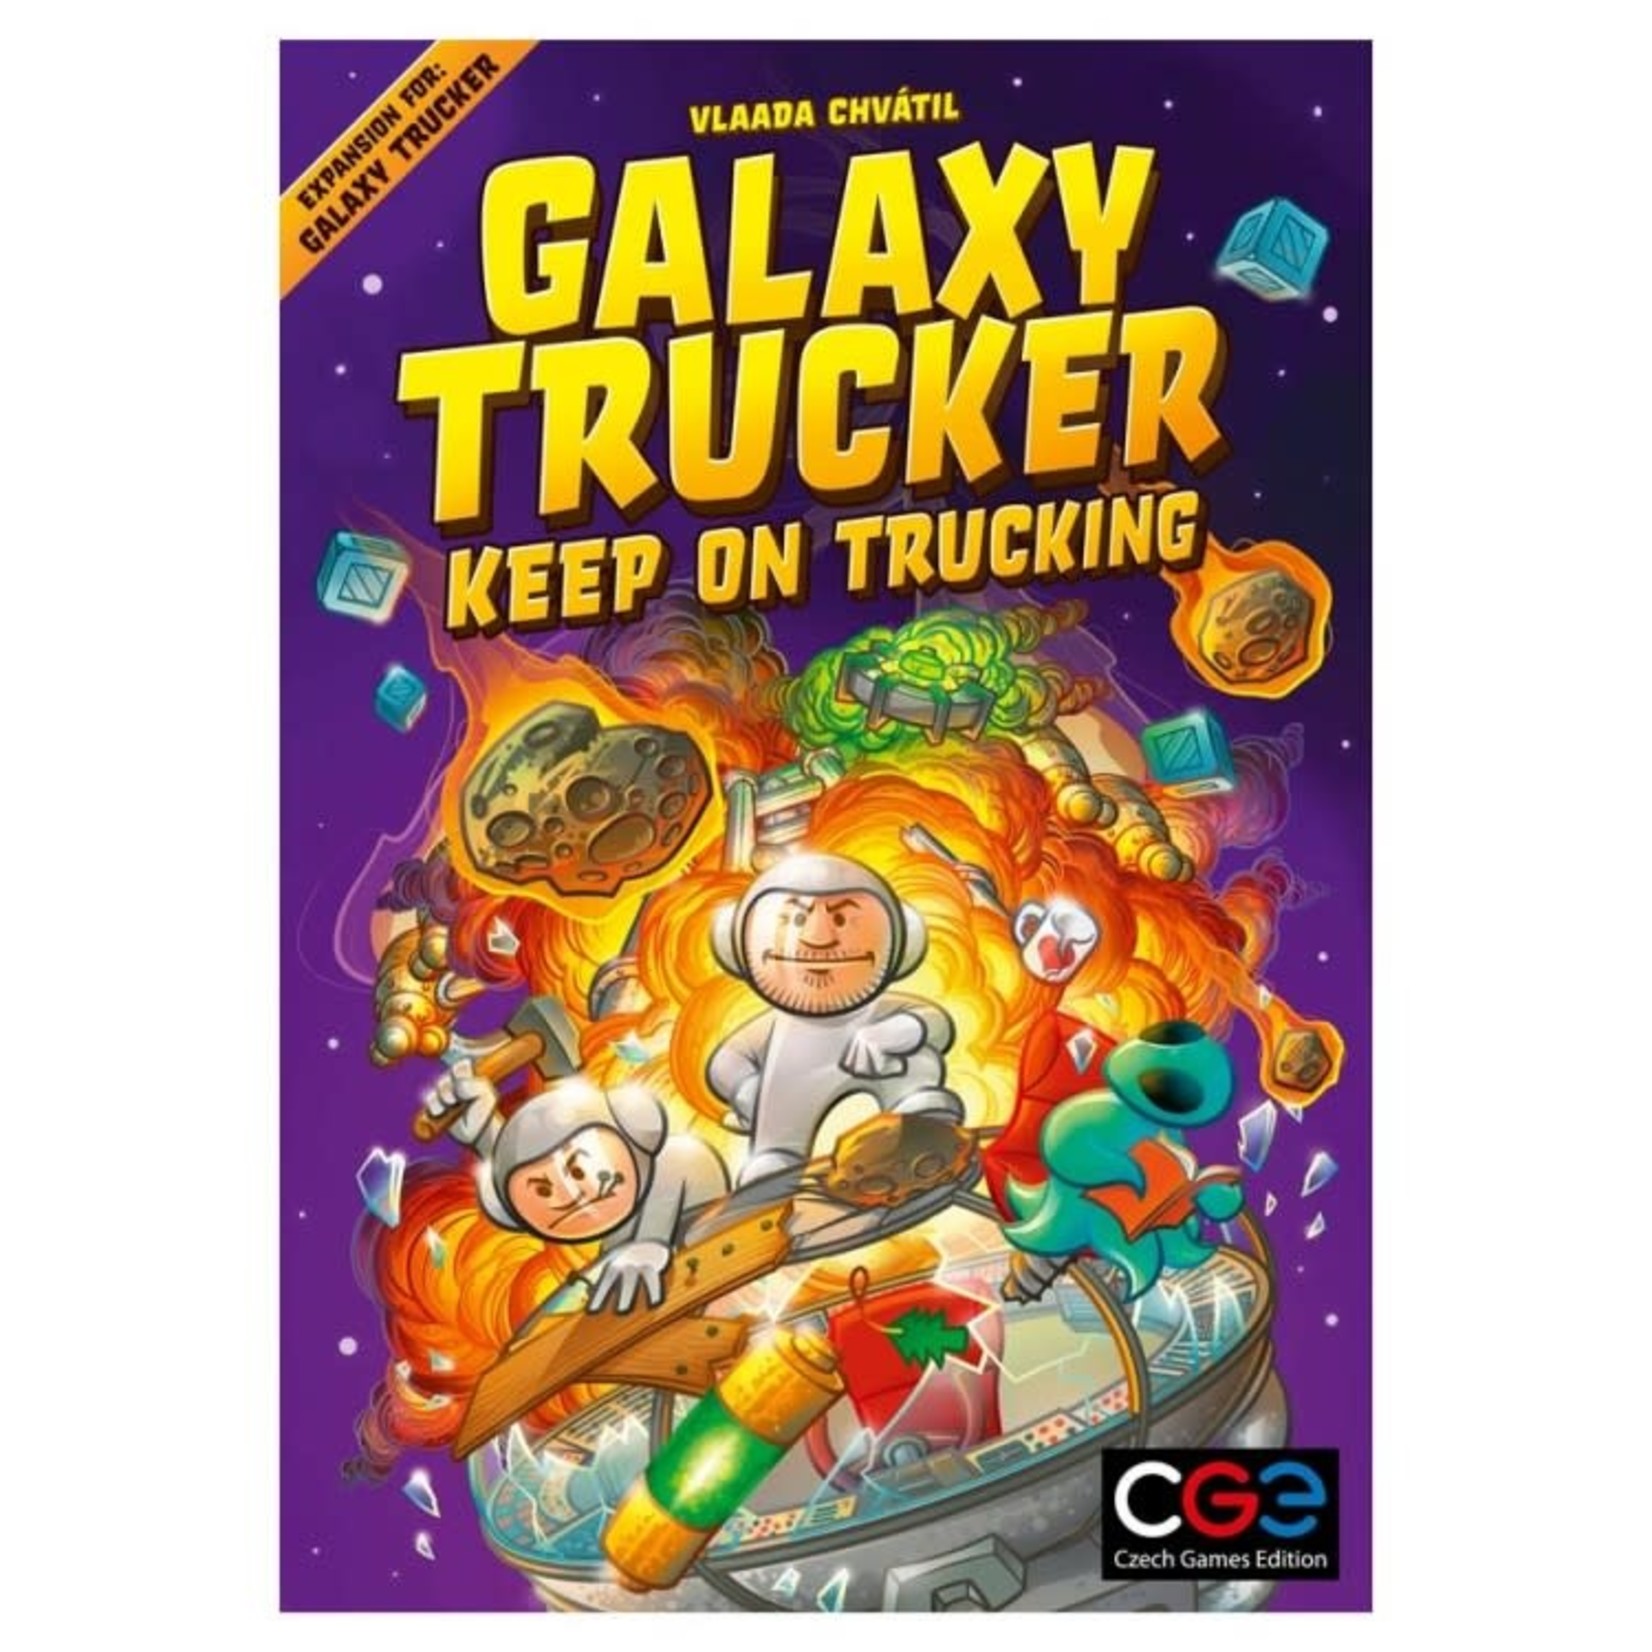 Czech Games Editions Galaxy Trucker Keep on Trucking